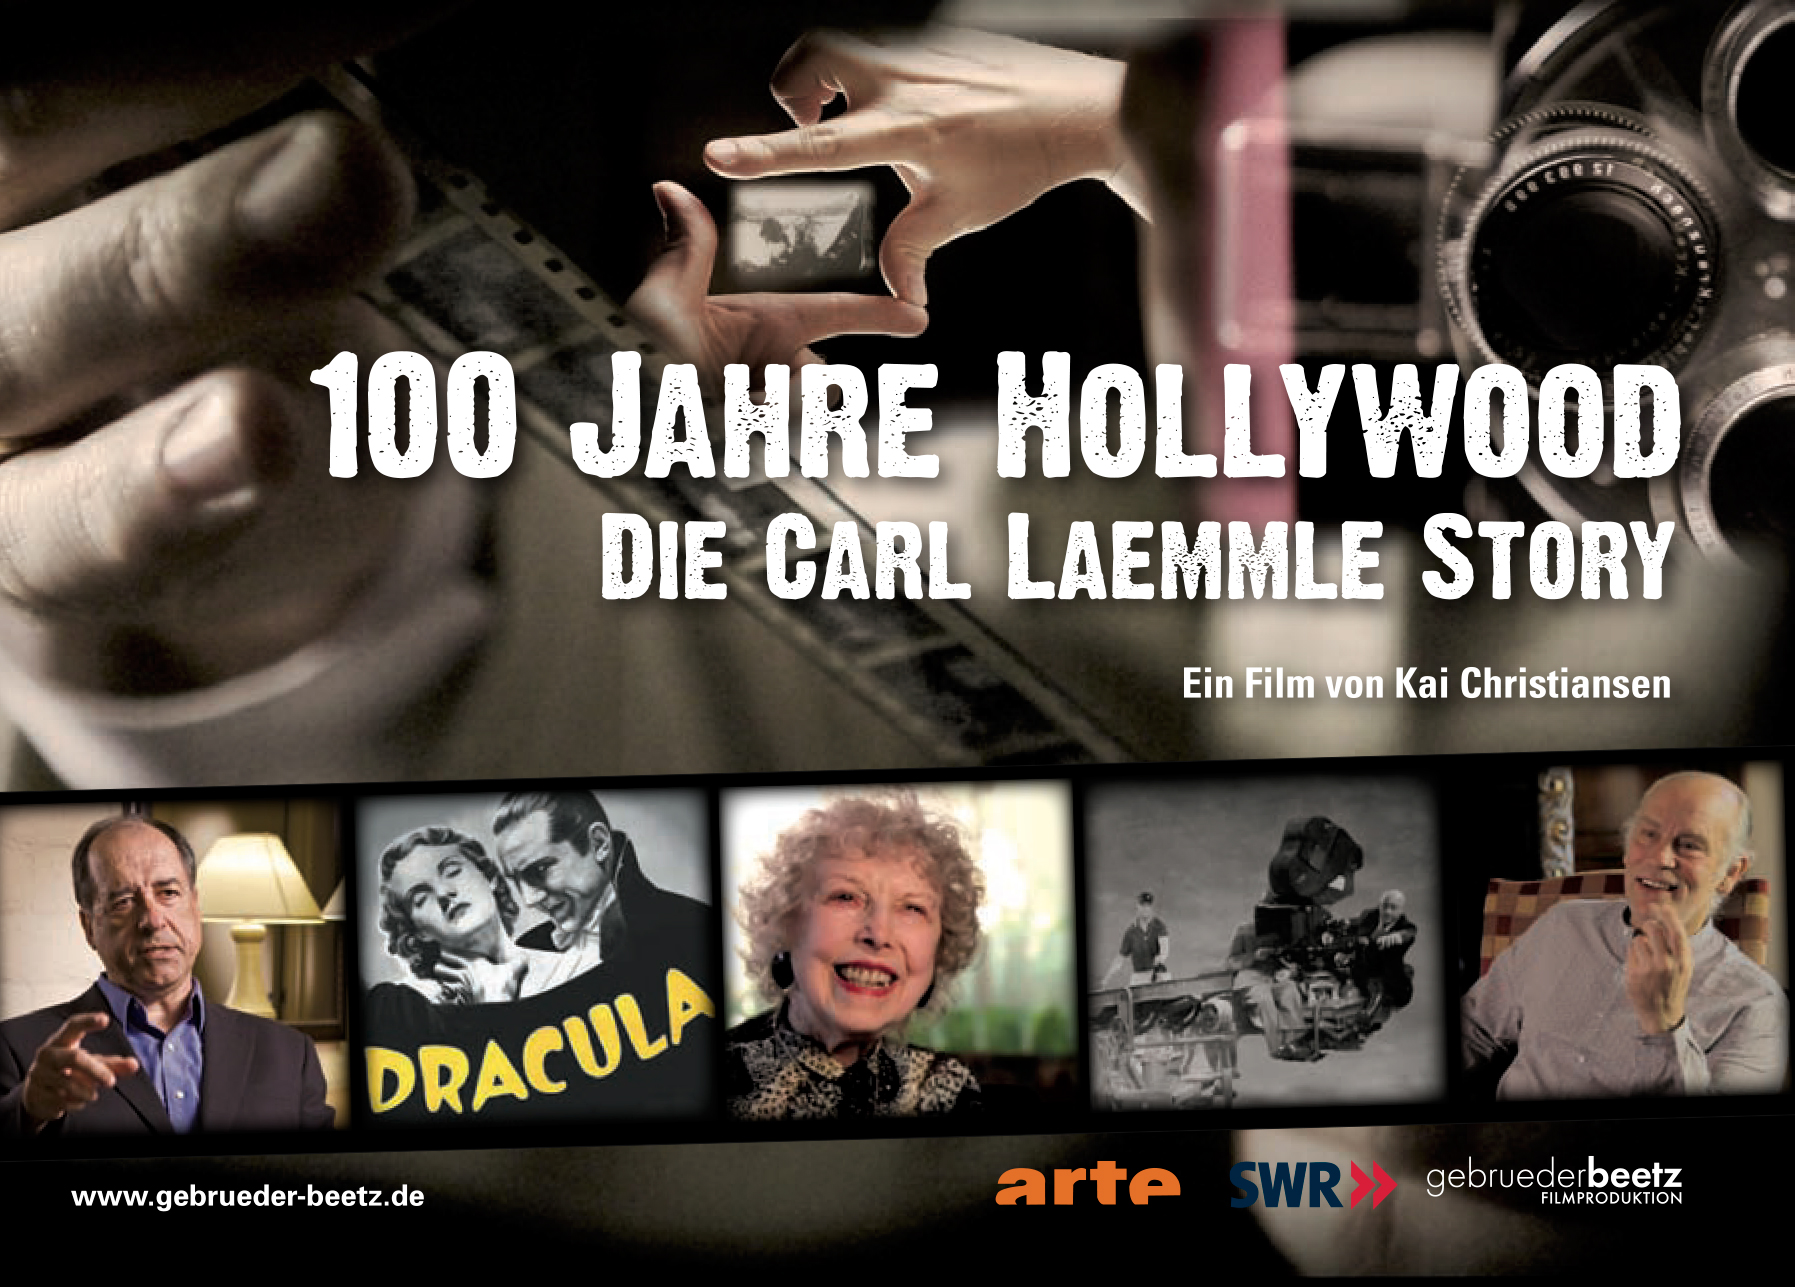 Un siècle d'Hollywood - Carl Laemmle, un producteur visionnaire